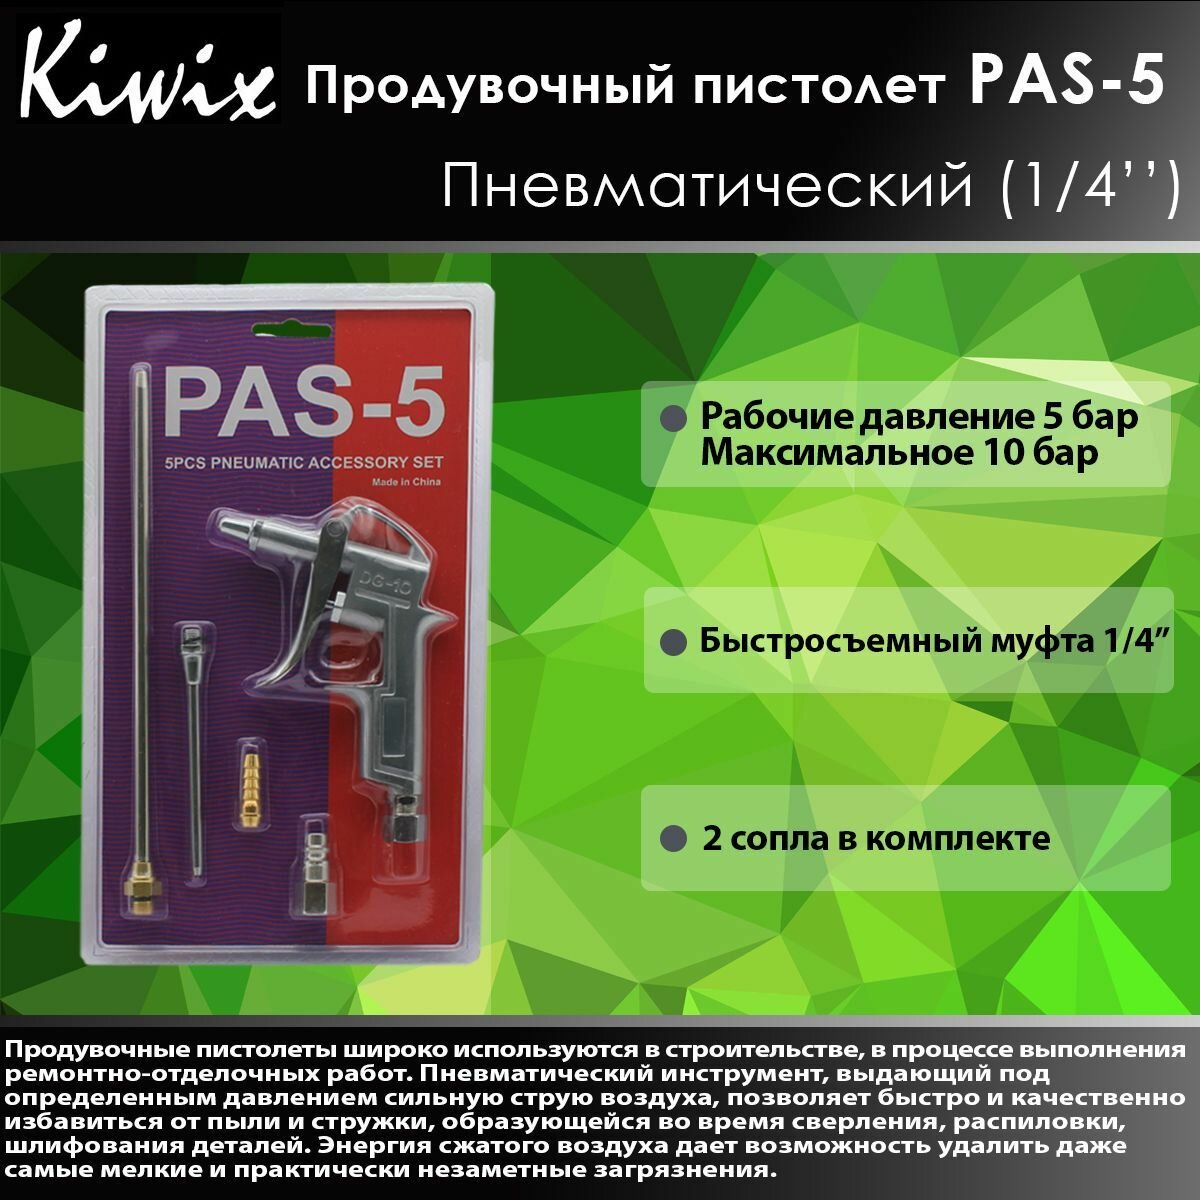 KIWX Продувочный пистолет PAS-5 Пневматический (1/4')